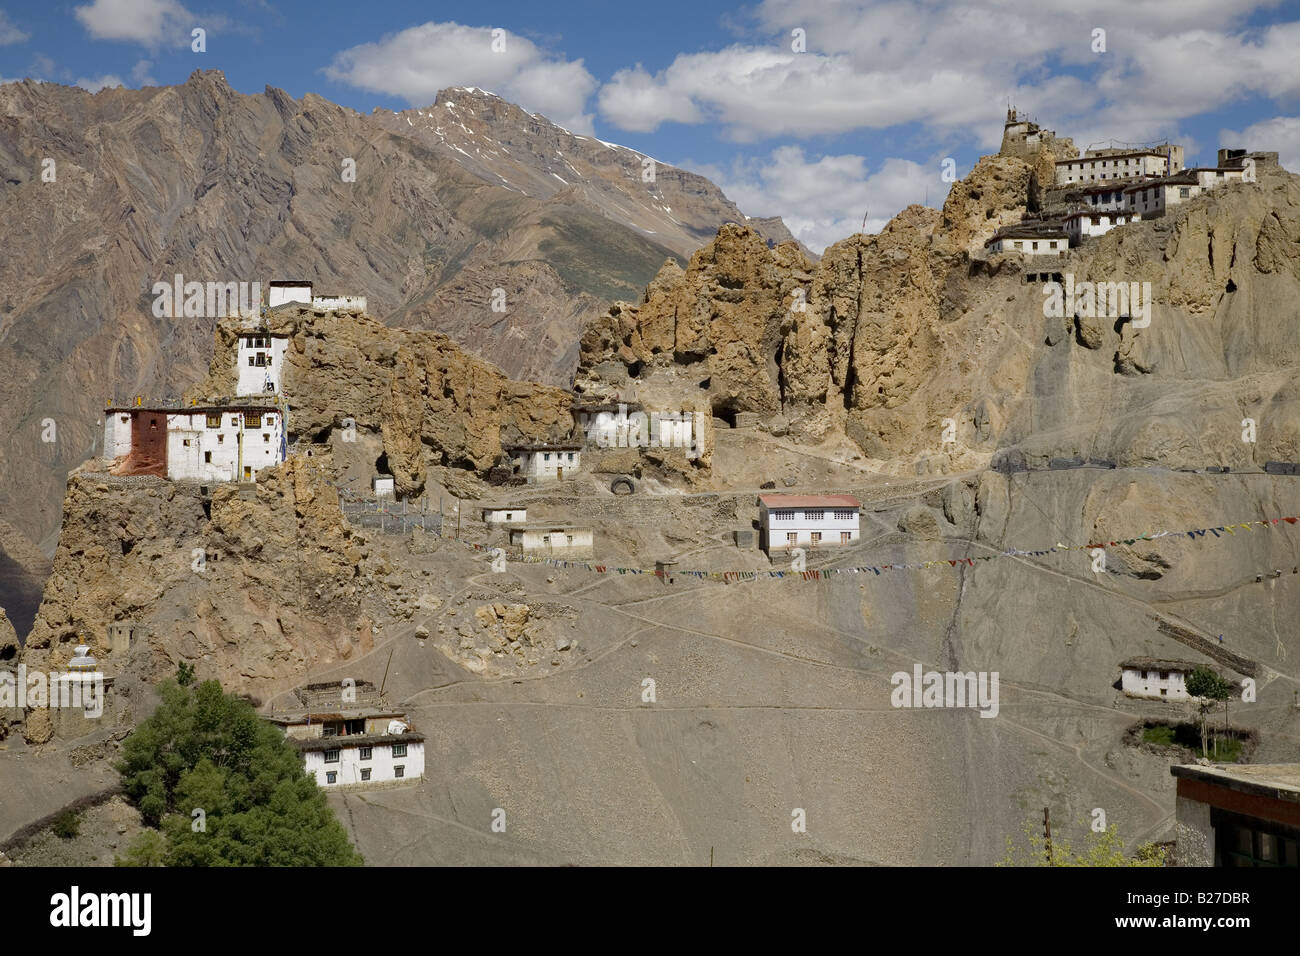 Vista del villaggio di Dhankar (3890m), il monastero e il fort. Spiti valley, Himachal Pradesh. India, Asia. Foto Stock